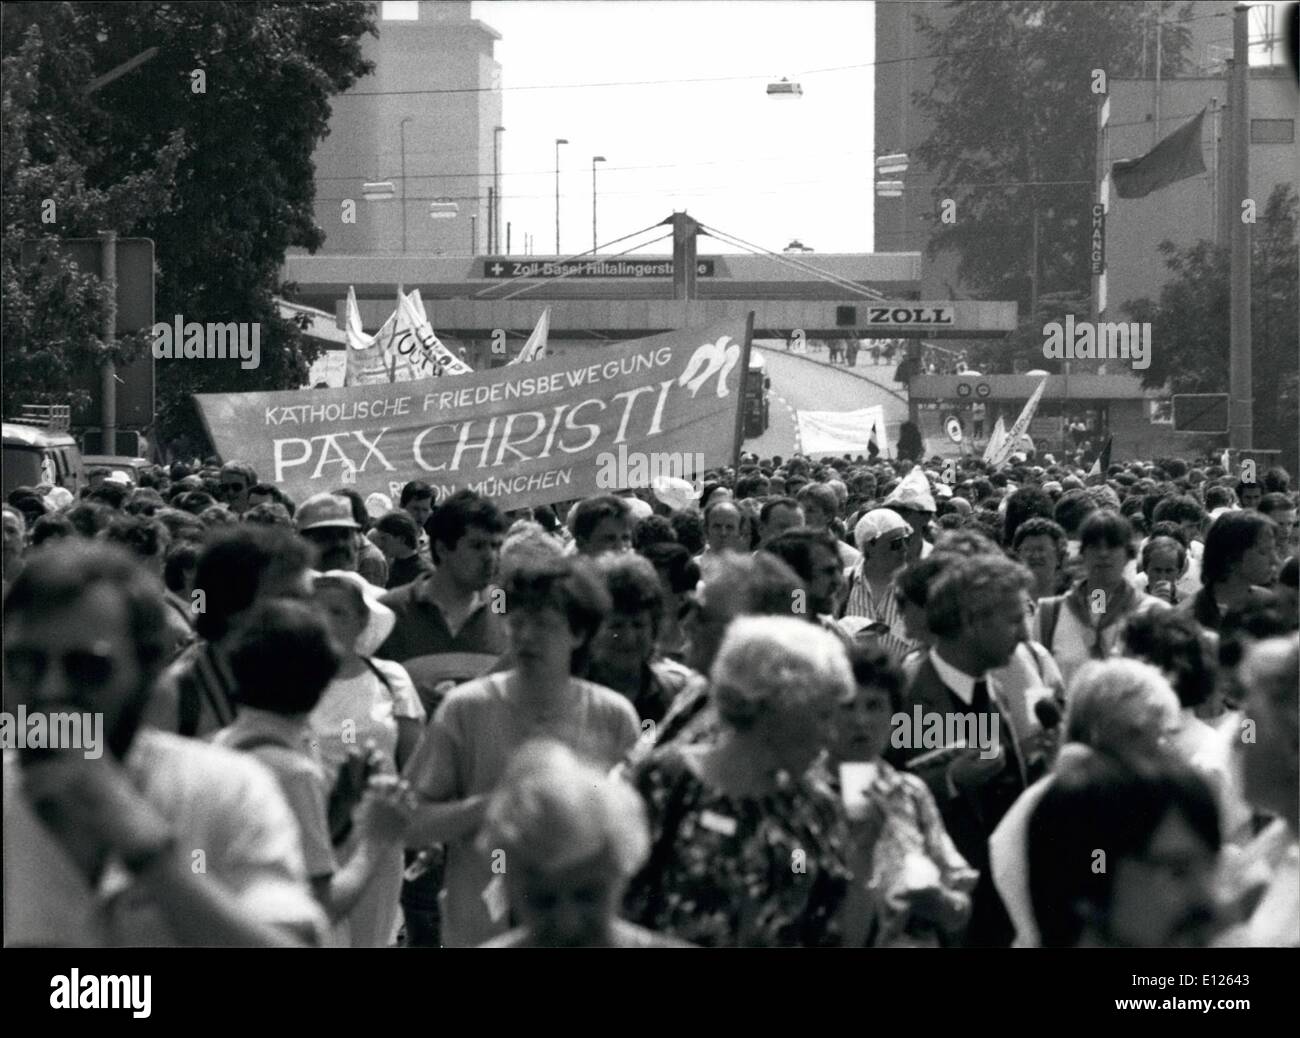 05 mai 1989 - Marche pour la paix : plus de 5000 personnes ont participé à une marche pour la paix qui les a conduits à travers l'Allemagne de l'Ouest, la Suisse et la France. La marche avait été organisée à l'appui de l'Assemblée Œcuménique européenne réunion qui s'est tenue à Bâle, 15-20 mai. Banque D'Images